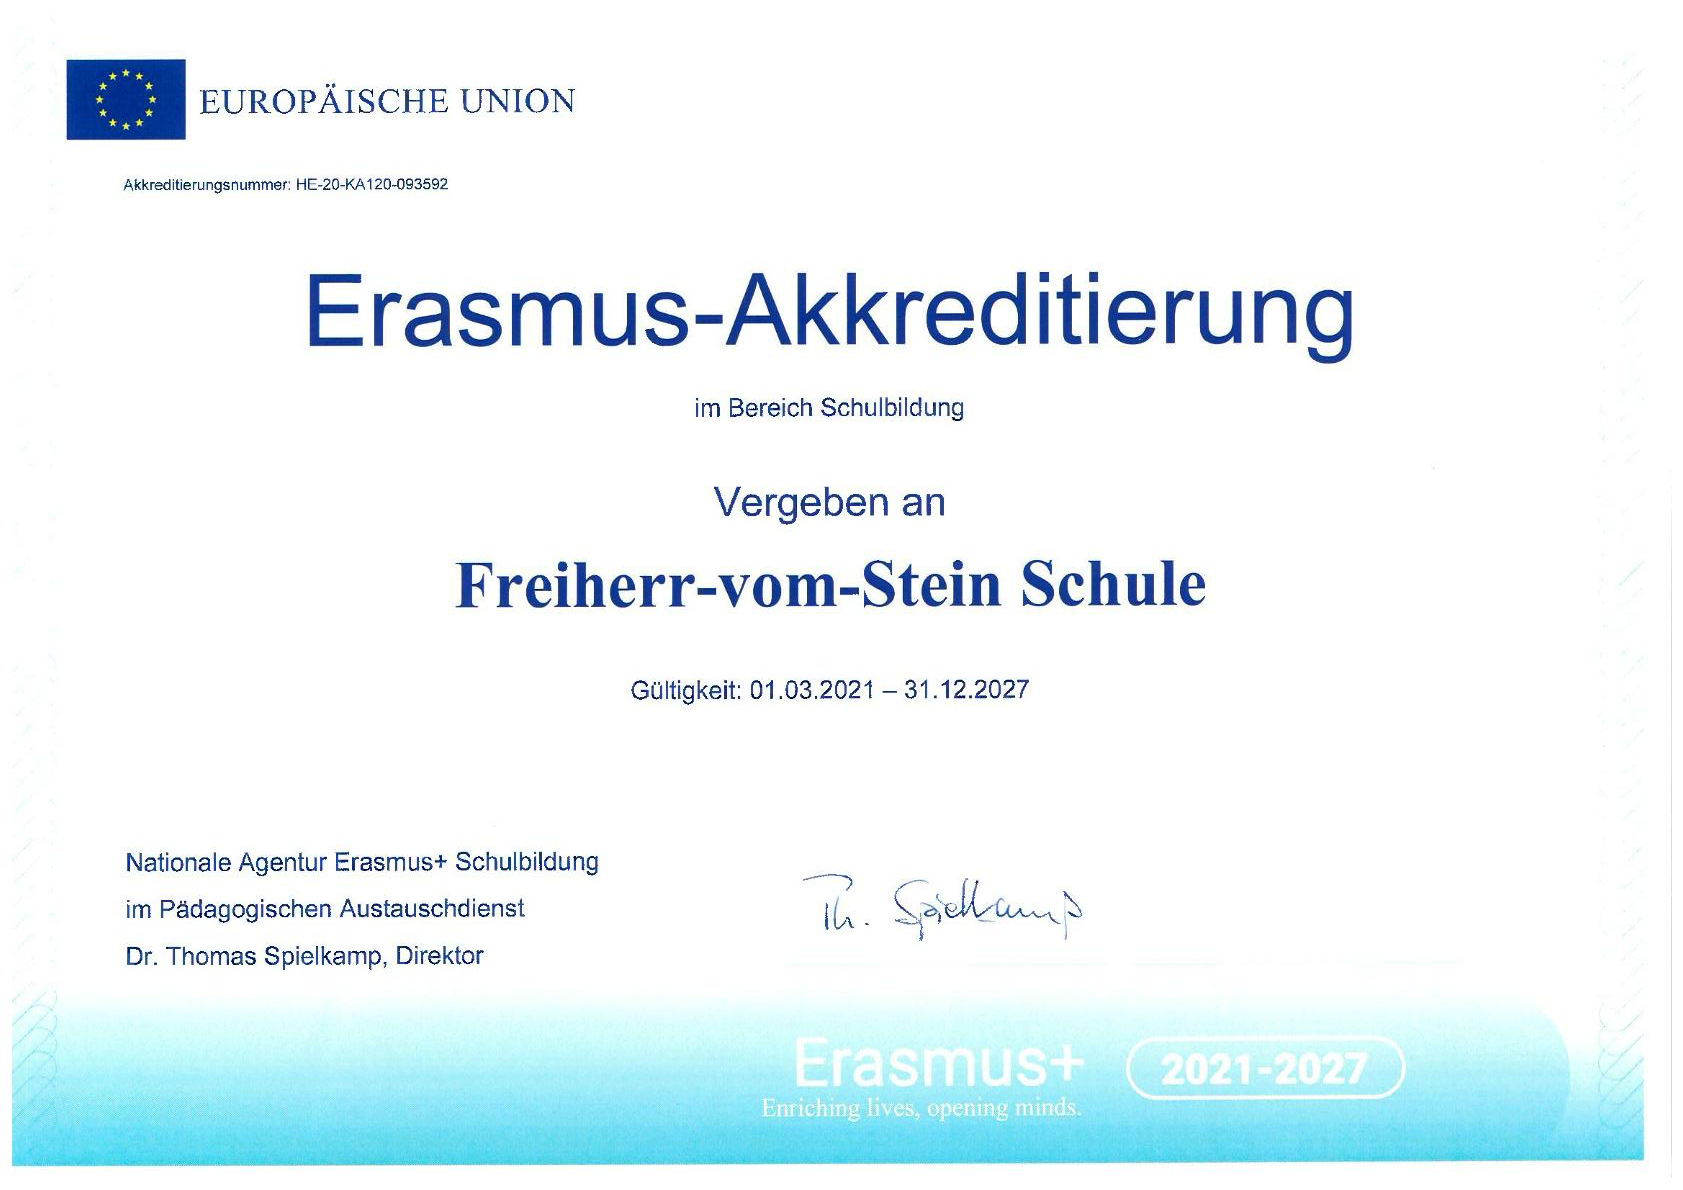 Erasmus Akkreditierung im Bereich Schulbildung